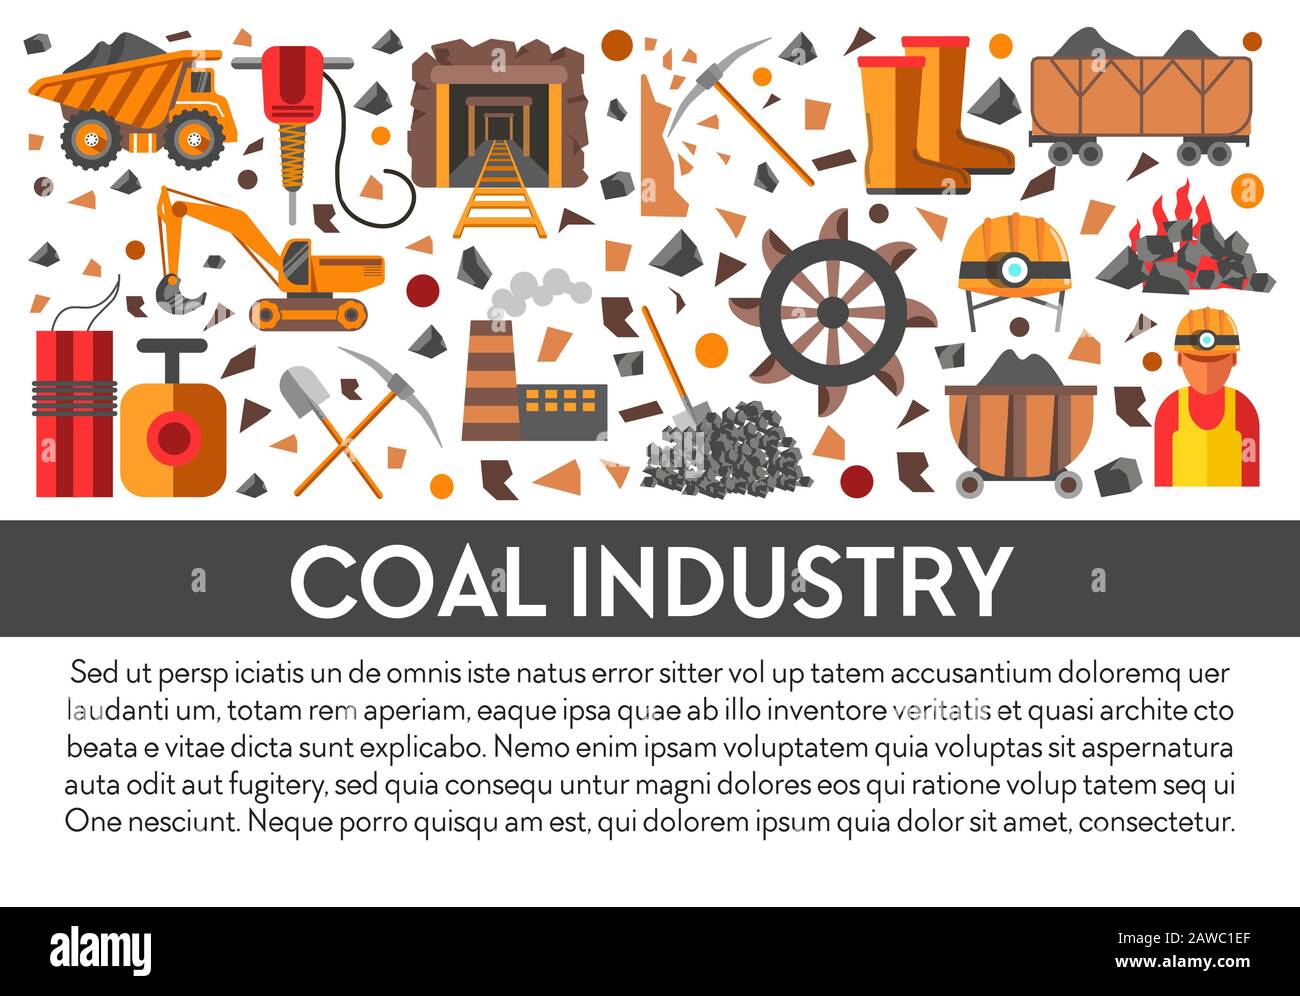 Banner-Vorlage für die Kohleindustrie mit Mining-Symbolen und Text Stock Vektor